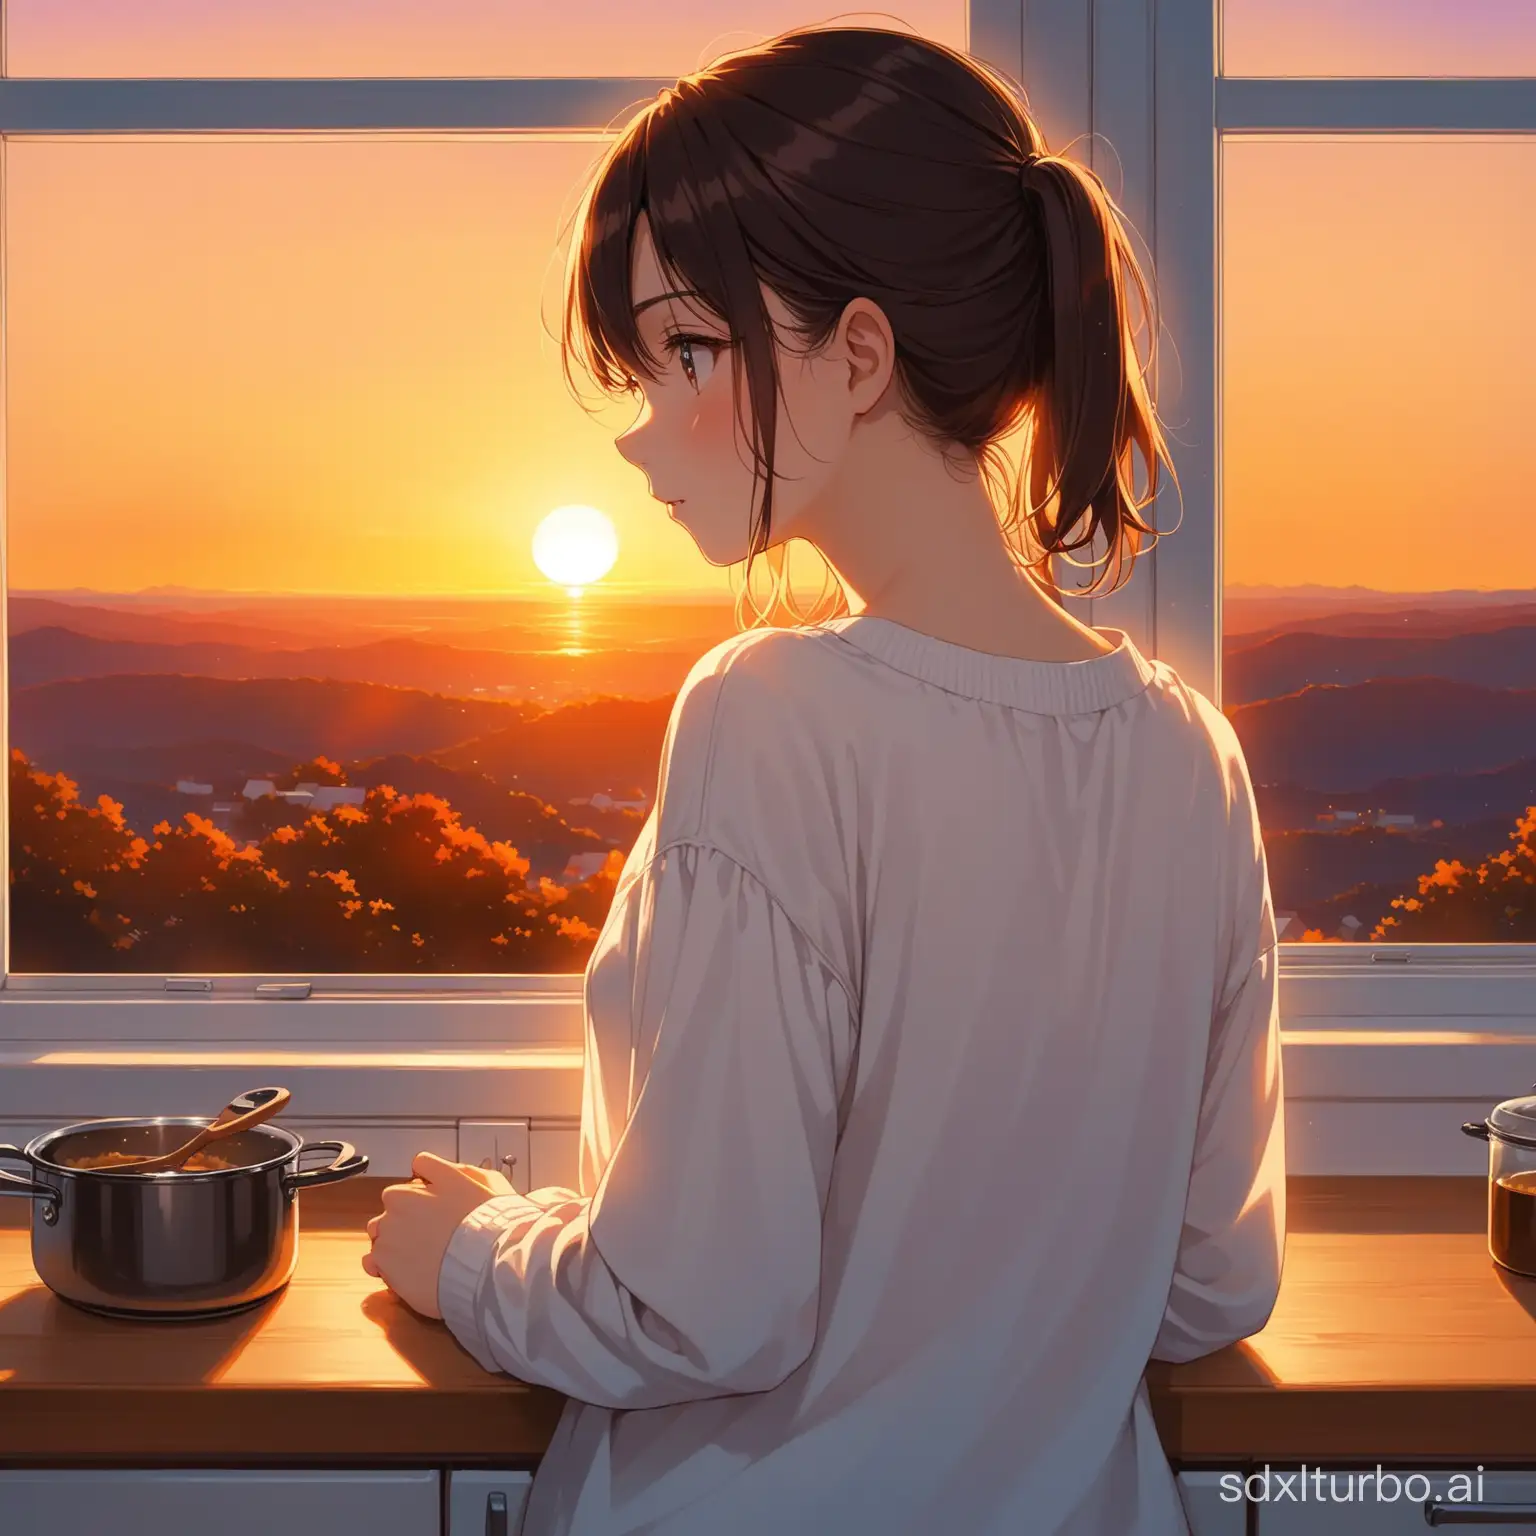 Teen-Girl-in-White-Sheer-Blouse-Gazing-at-Sunset-Through-Kitchen-Window